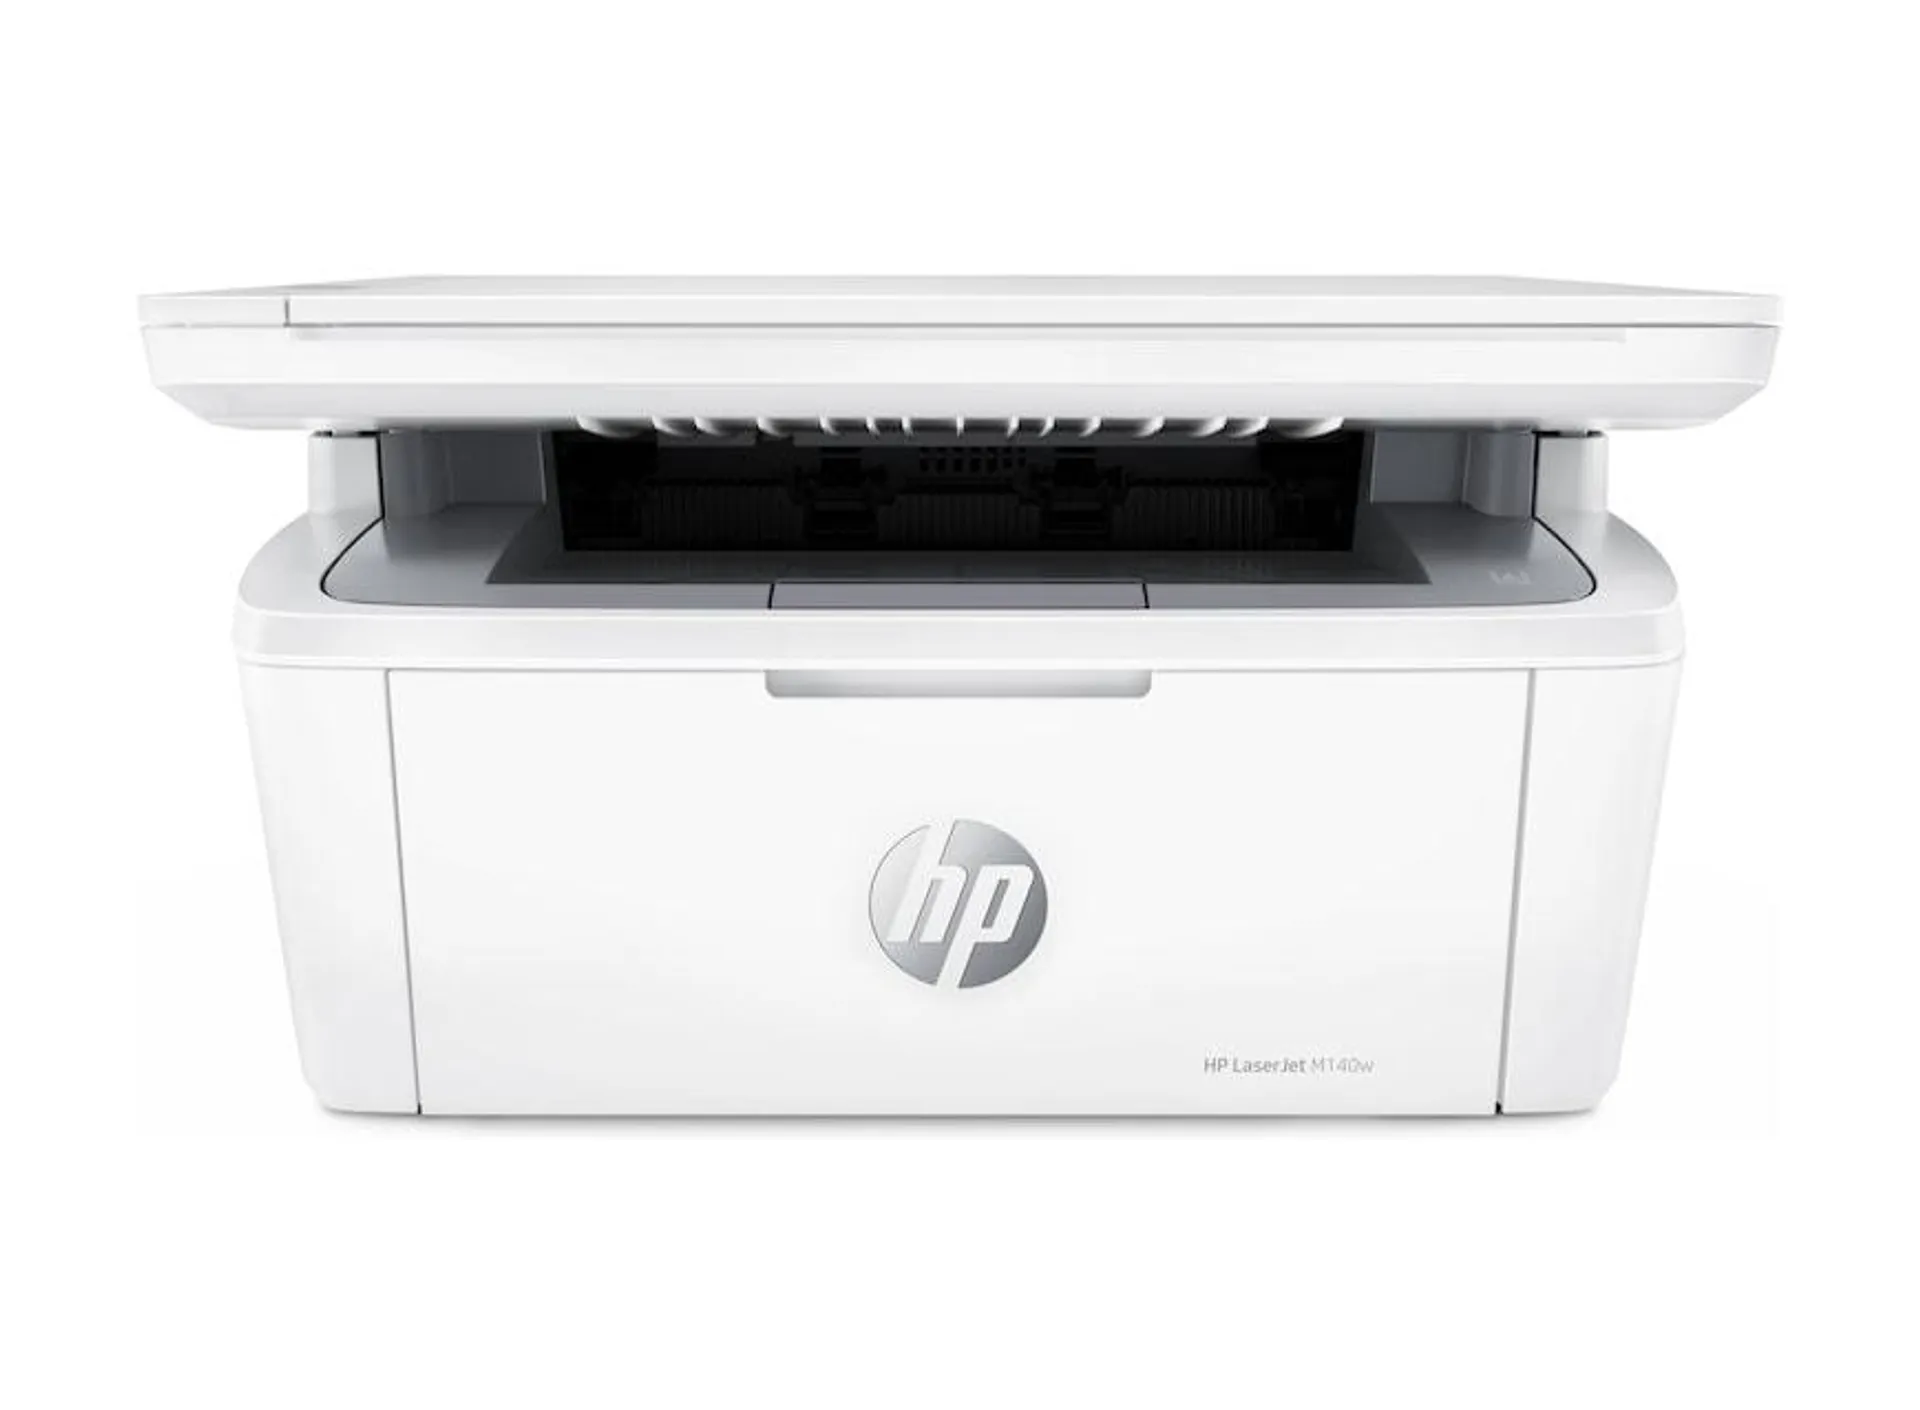 HP LaserJet M140w Wireless Printer